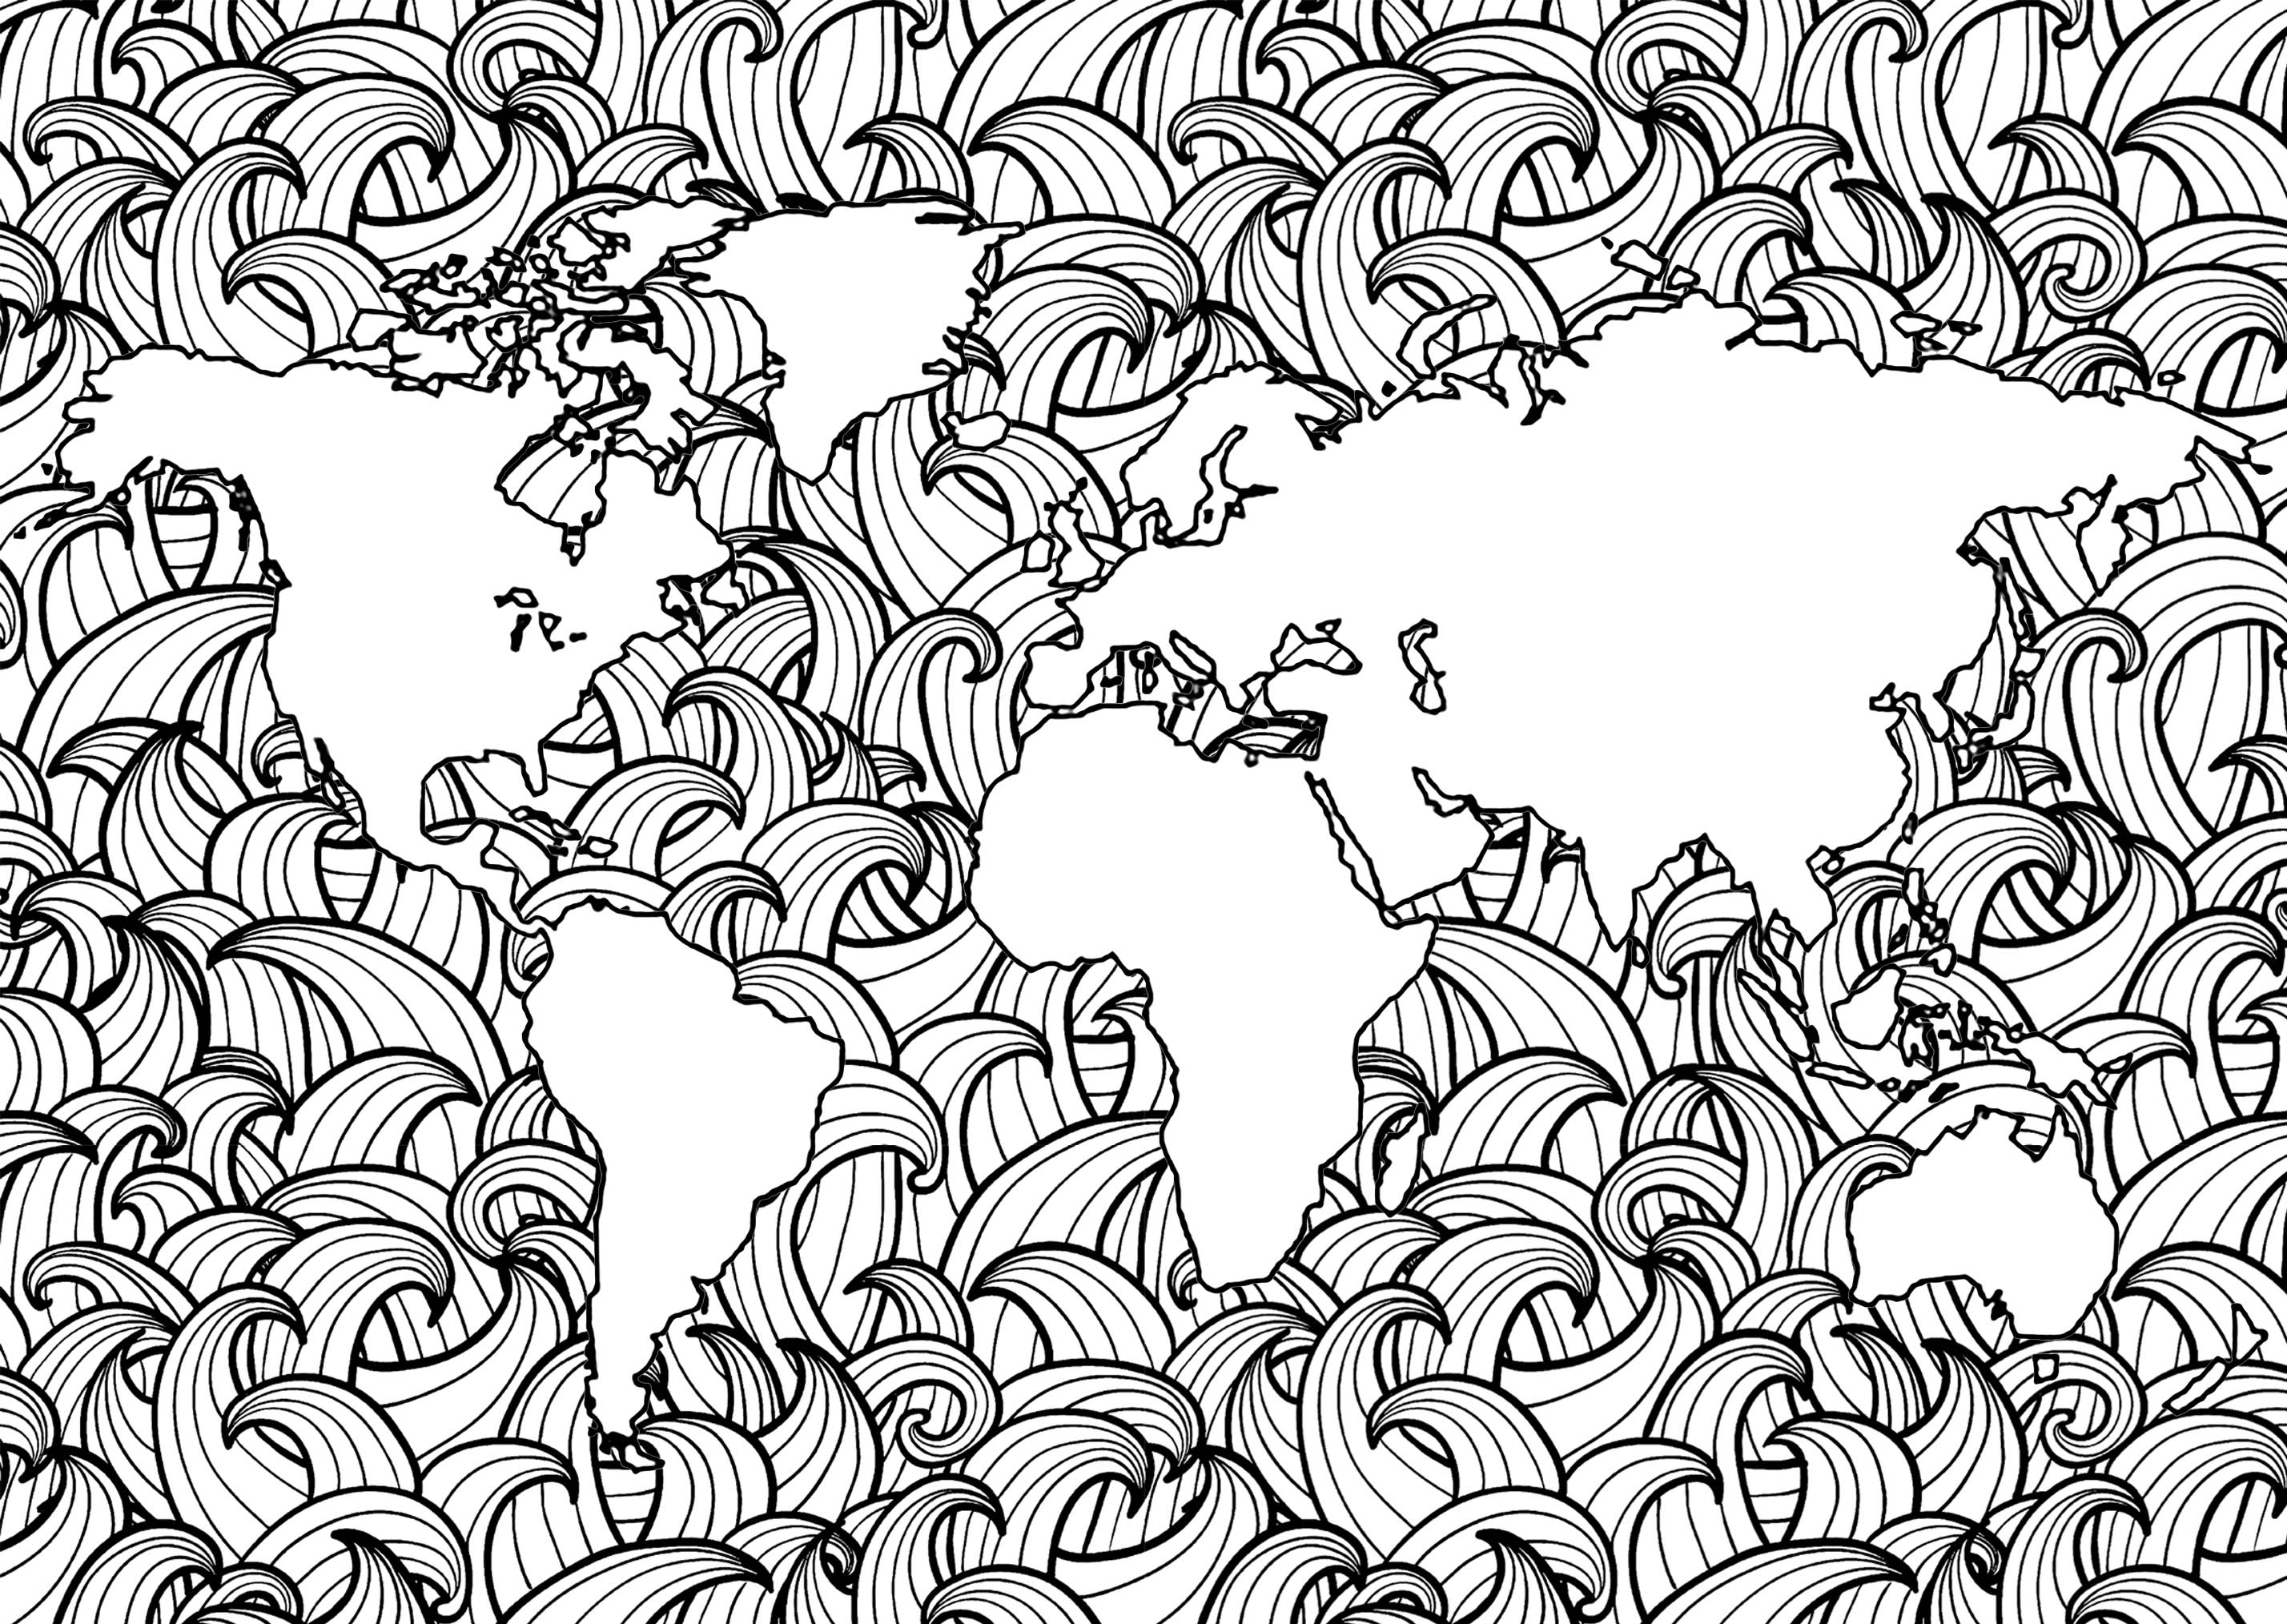 Planet Erde mit komplexen Wellenmustern in den Meeren, Künstler : Art'Isabelle